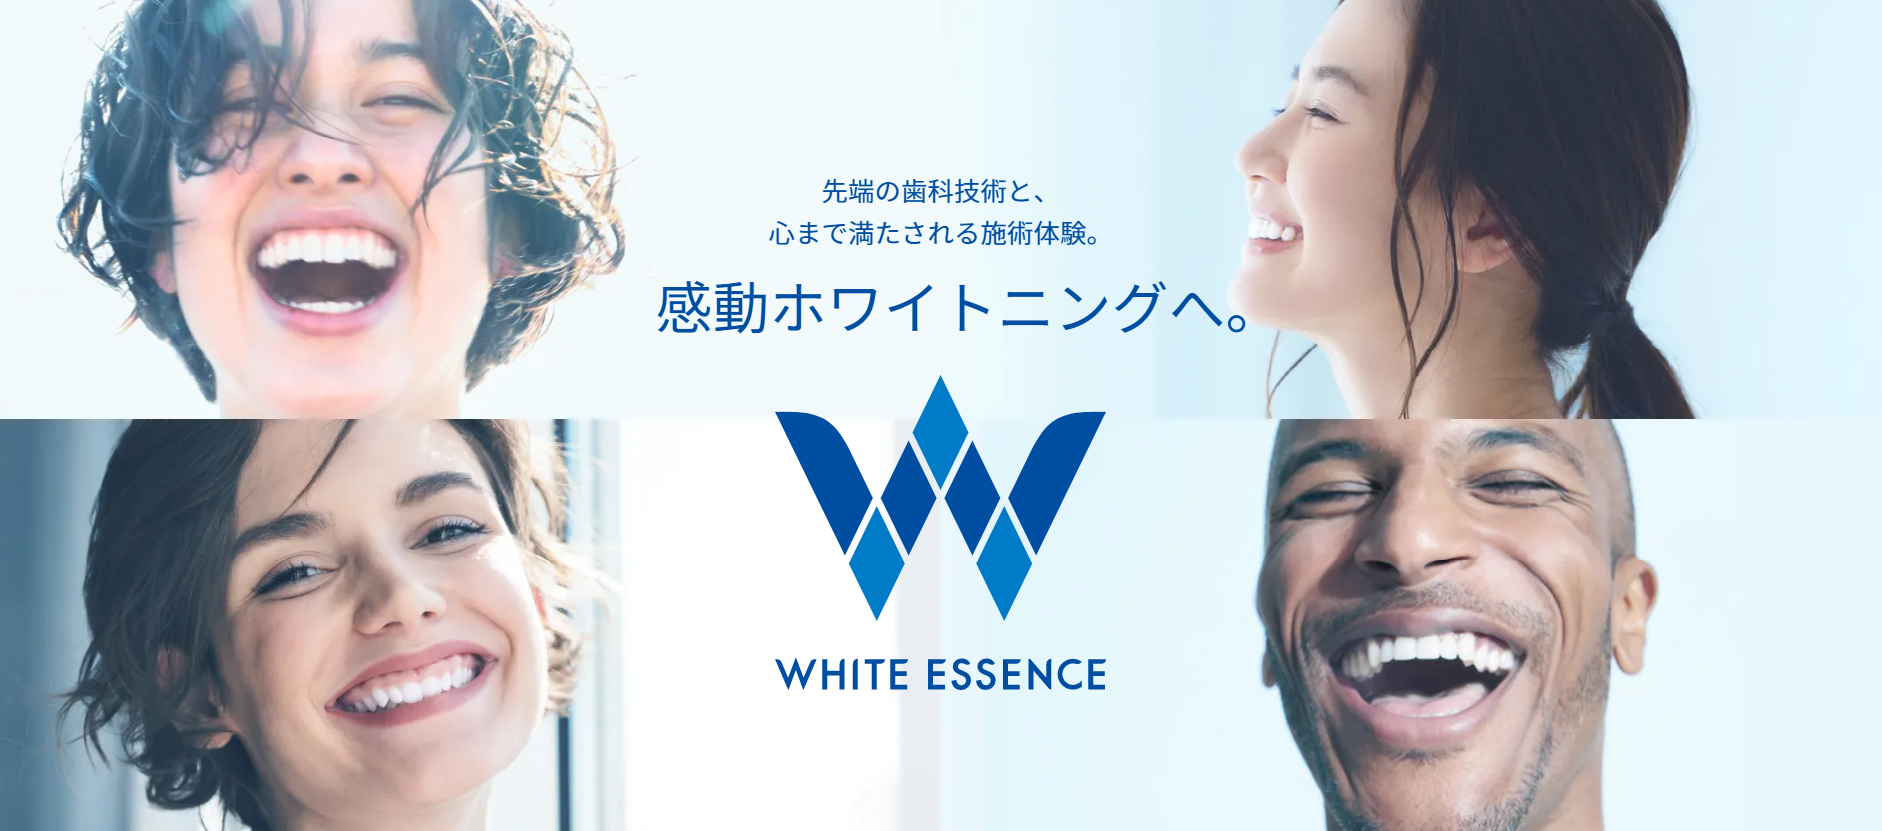 「歯を白くする」に特化したホワイトエッセンス